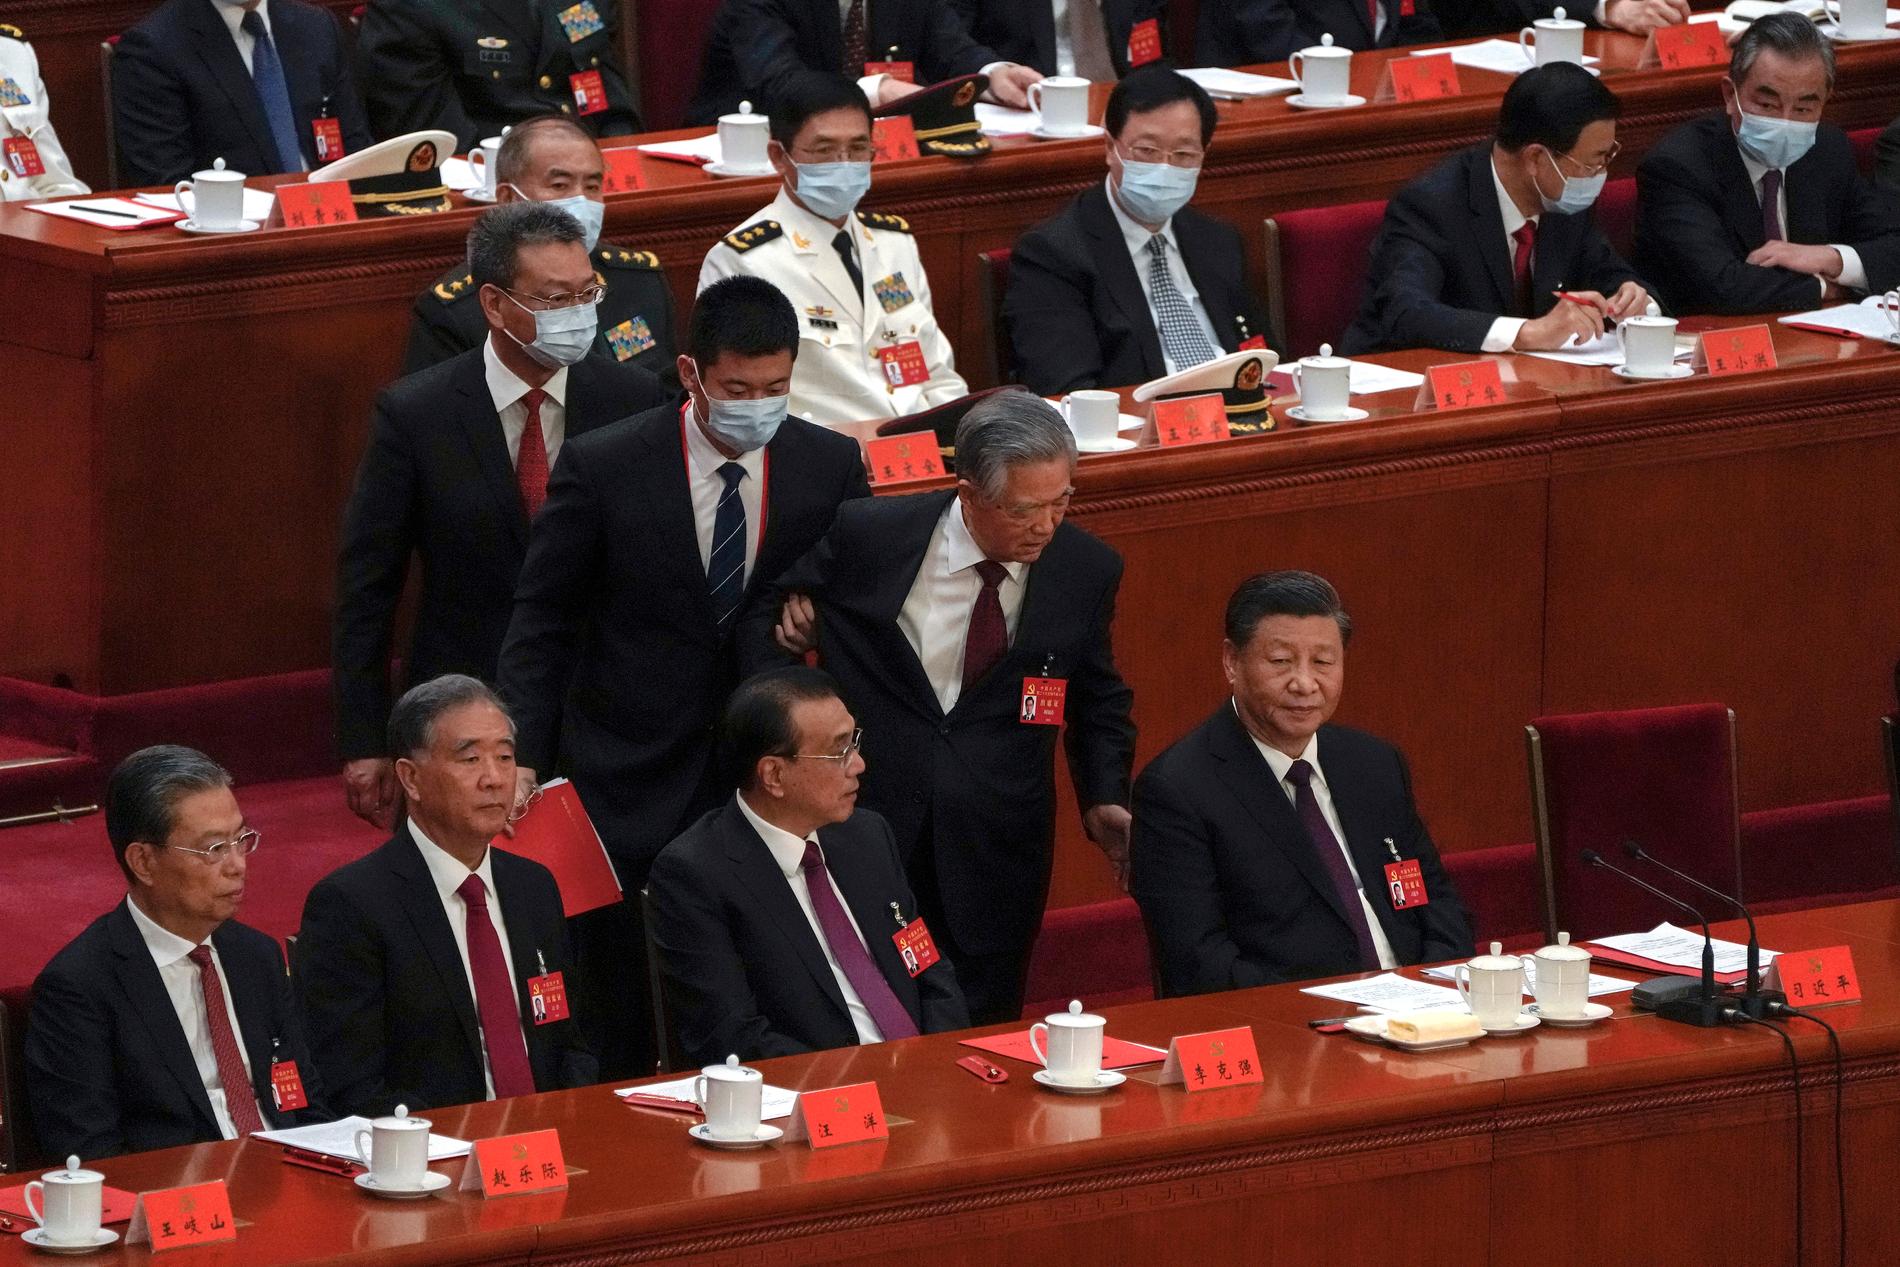 Hu Jintao, Kinas president mellan 2003 och 2013, förs bort från Folkets stora sal i Peking under partikongressens avslutningsceremoni. President Xi Jinping sitter längst till höger.